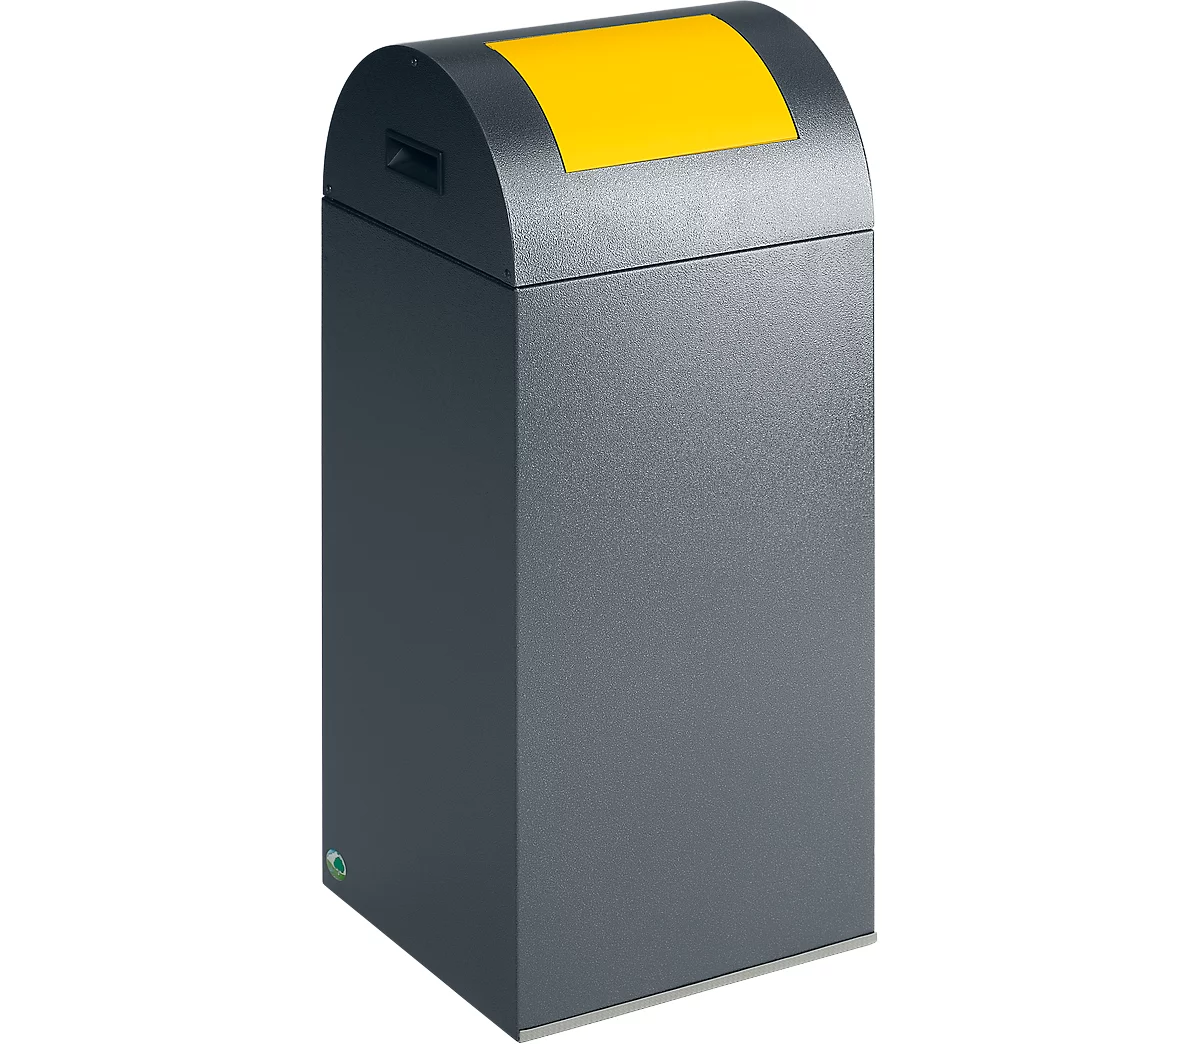 Zelfblussende afvalverzamelaar voor recycleerbaar afval 55R, antiekzilver/geel